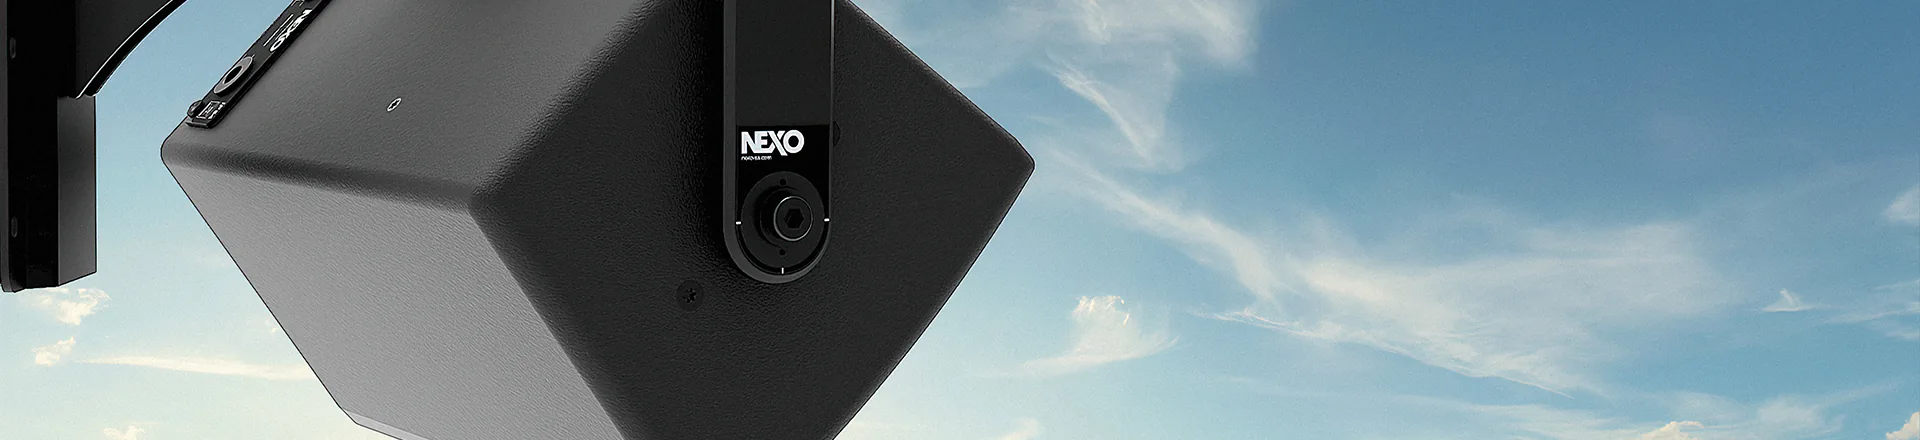 Nexo ePS Outdoor - Seria instalacyjna do zastosowań zewnętrznych